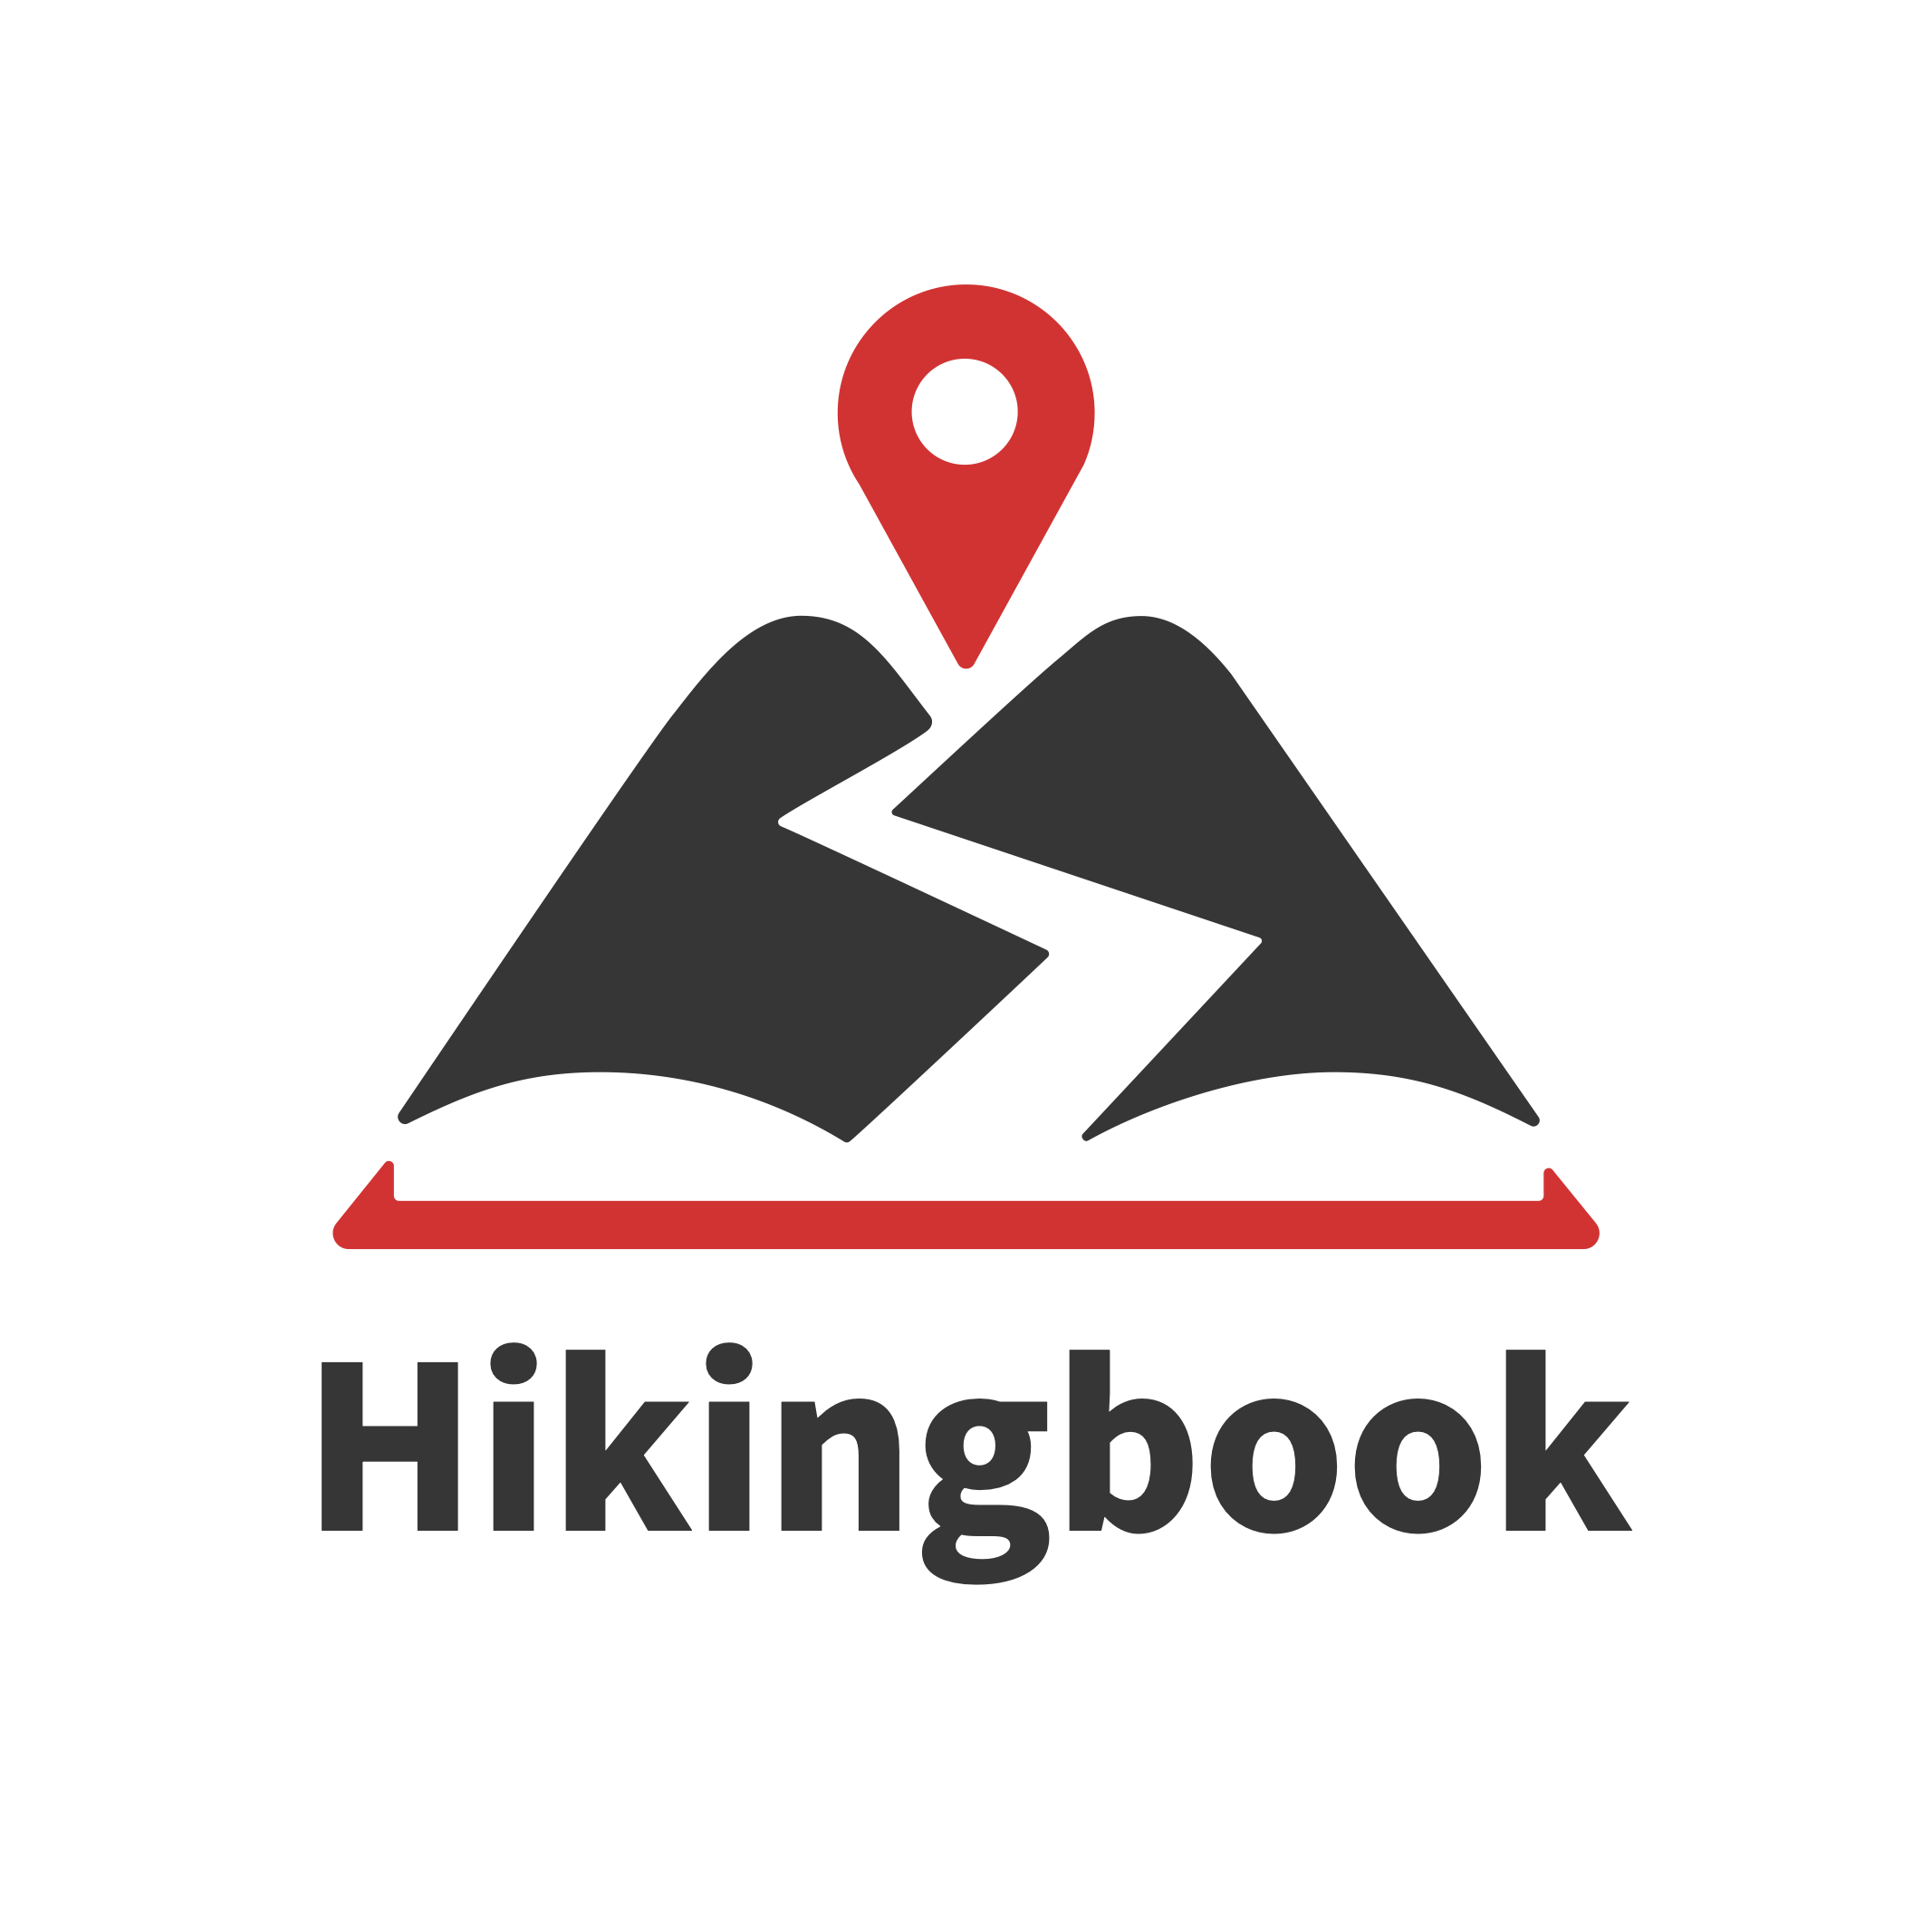 2019_車庫_Hikingbook_logo - 柯政祥 - Shina Yang